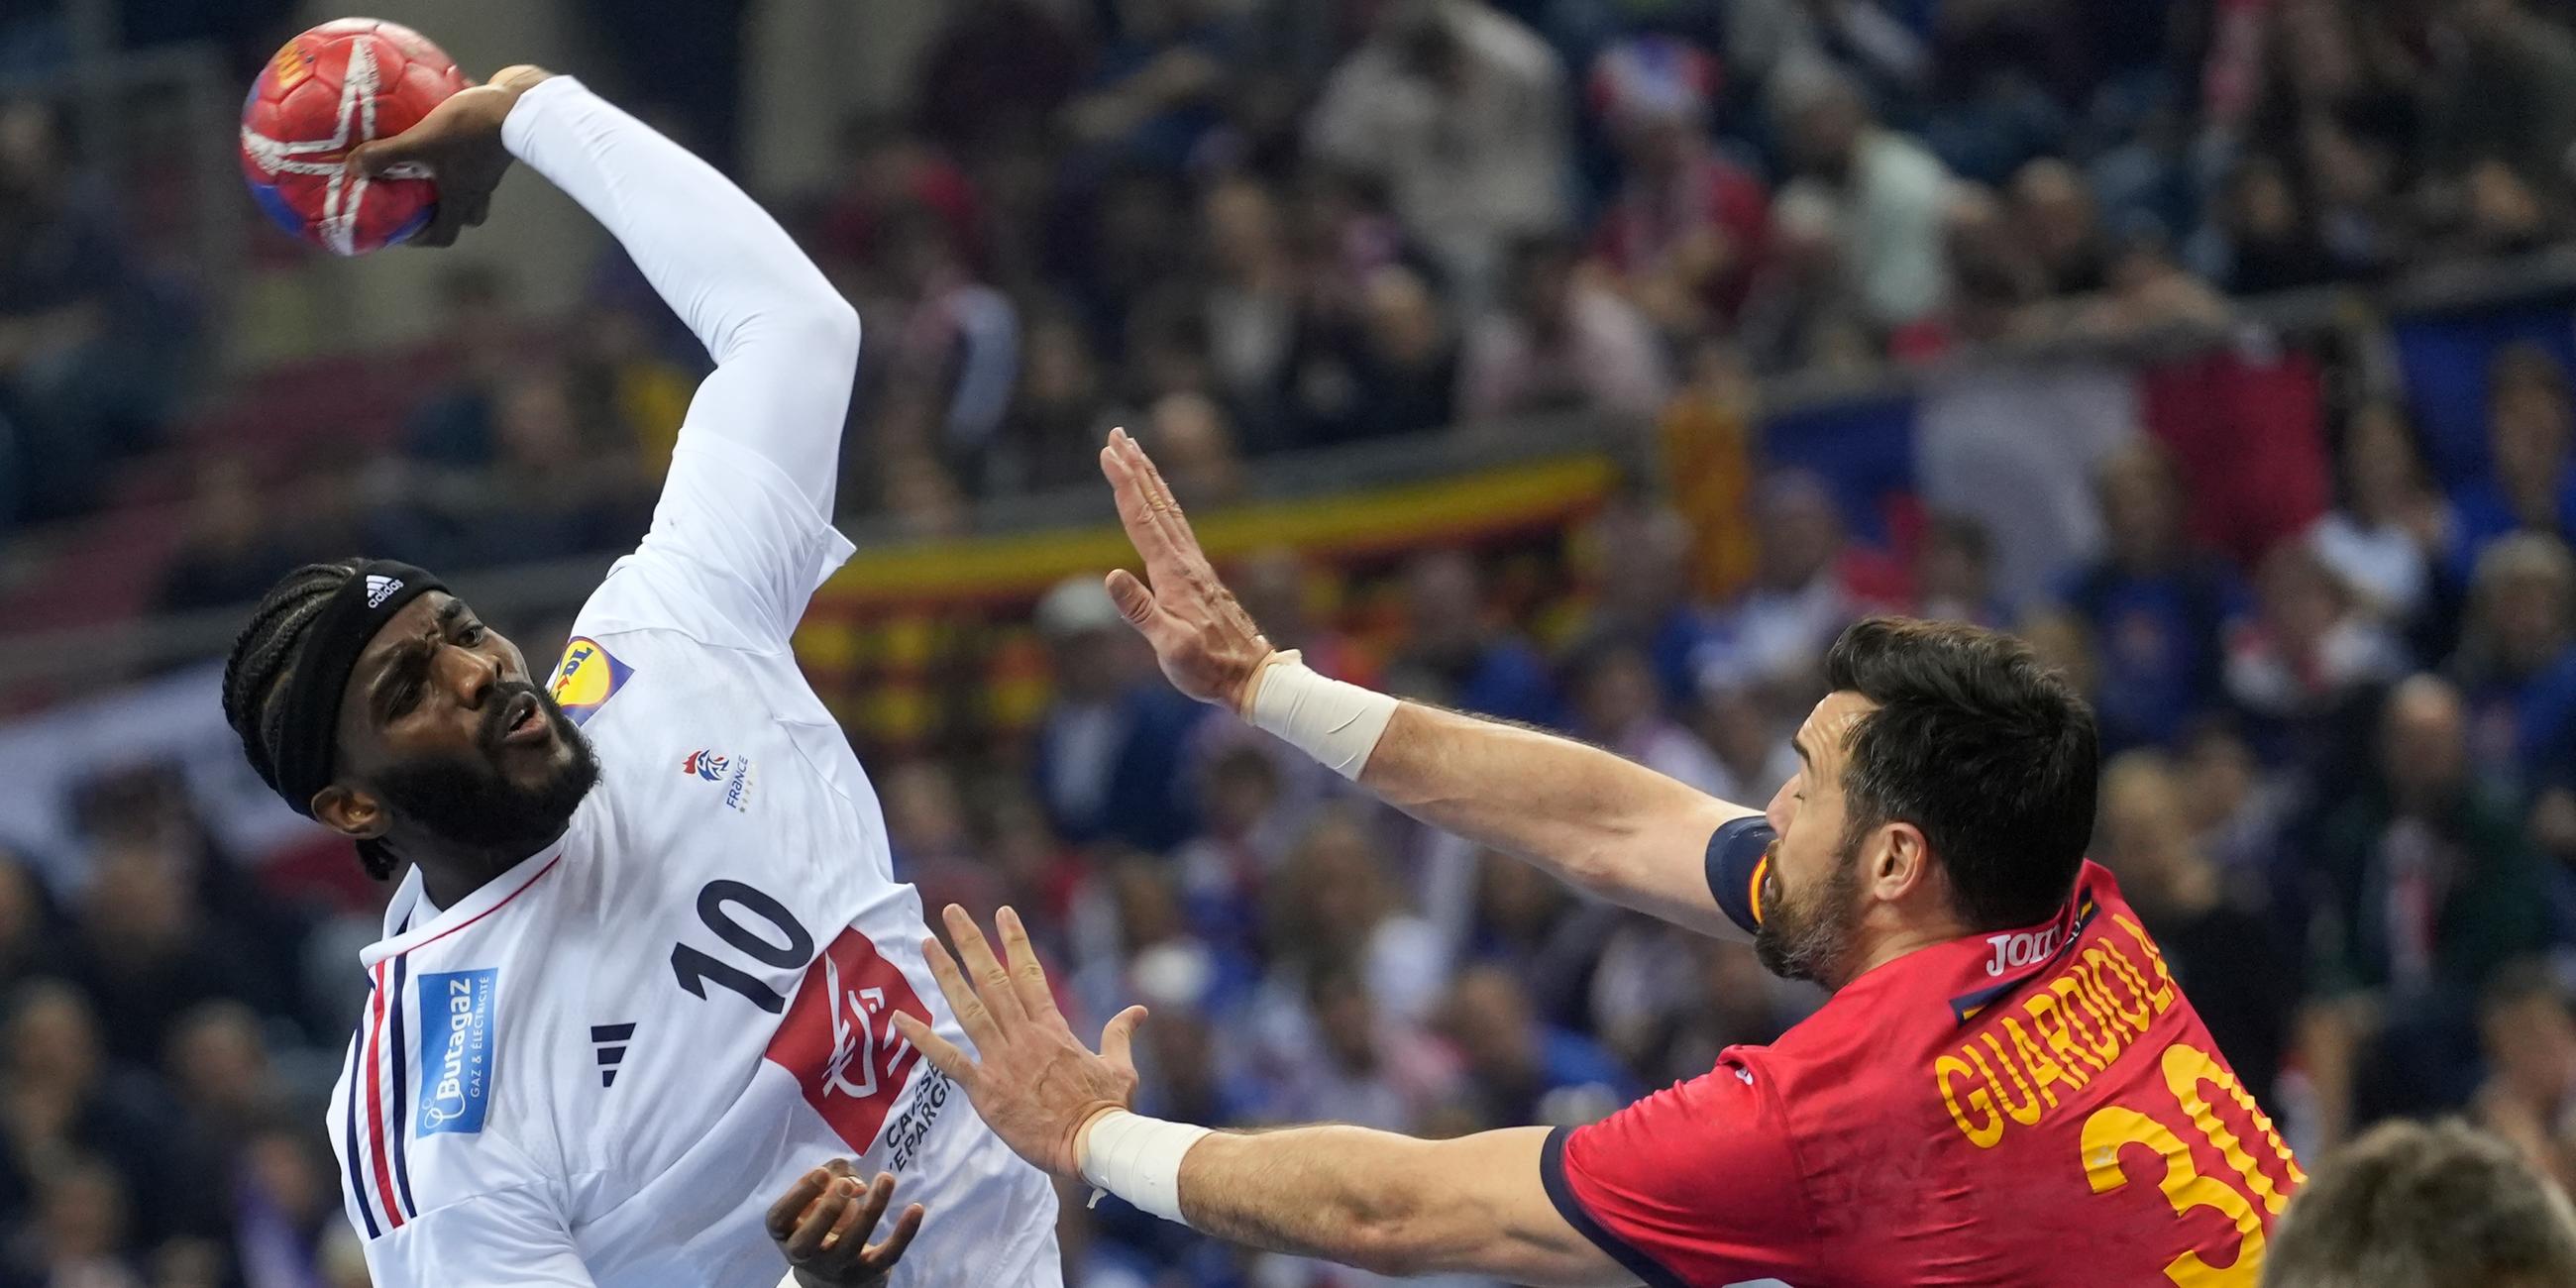 Handball-Weltmeisterschaft, Frankreich - Spanien: Frankreichs Dika Mem (l.) beim Sprungwurf. Rechts der Spanier Gedeon Guardiola.